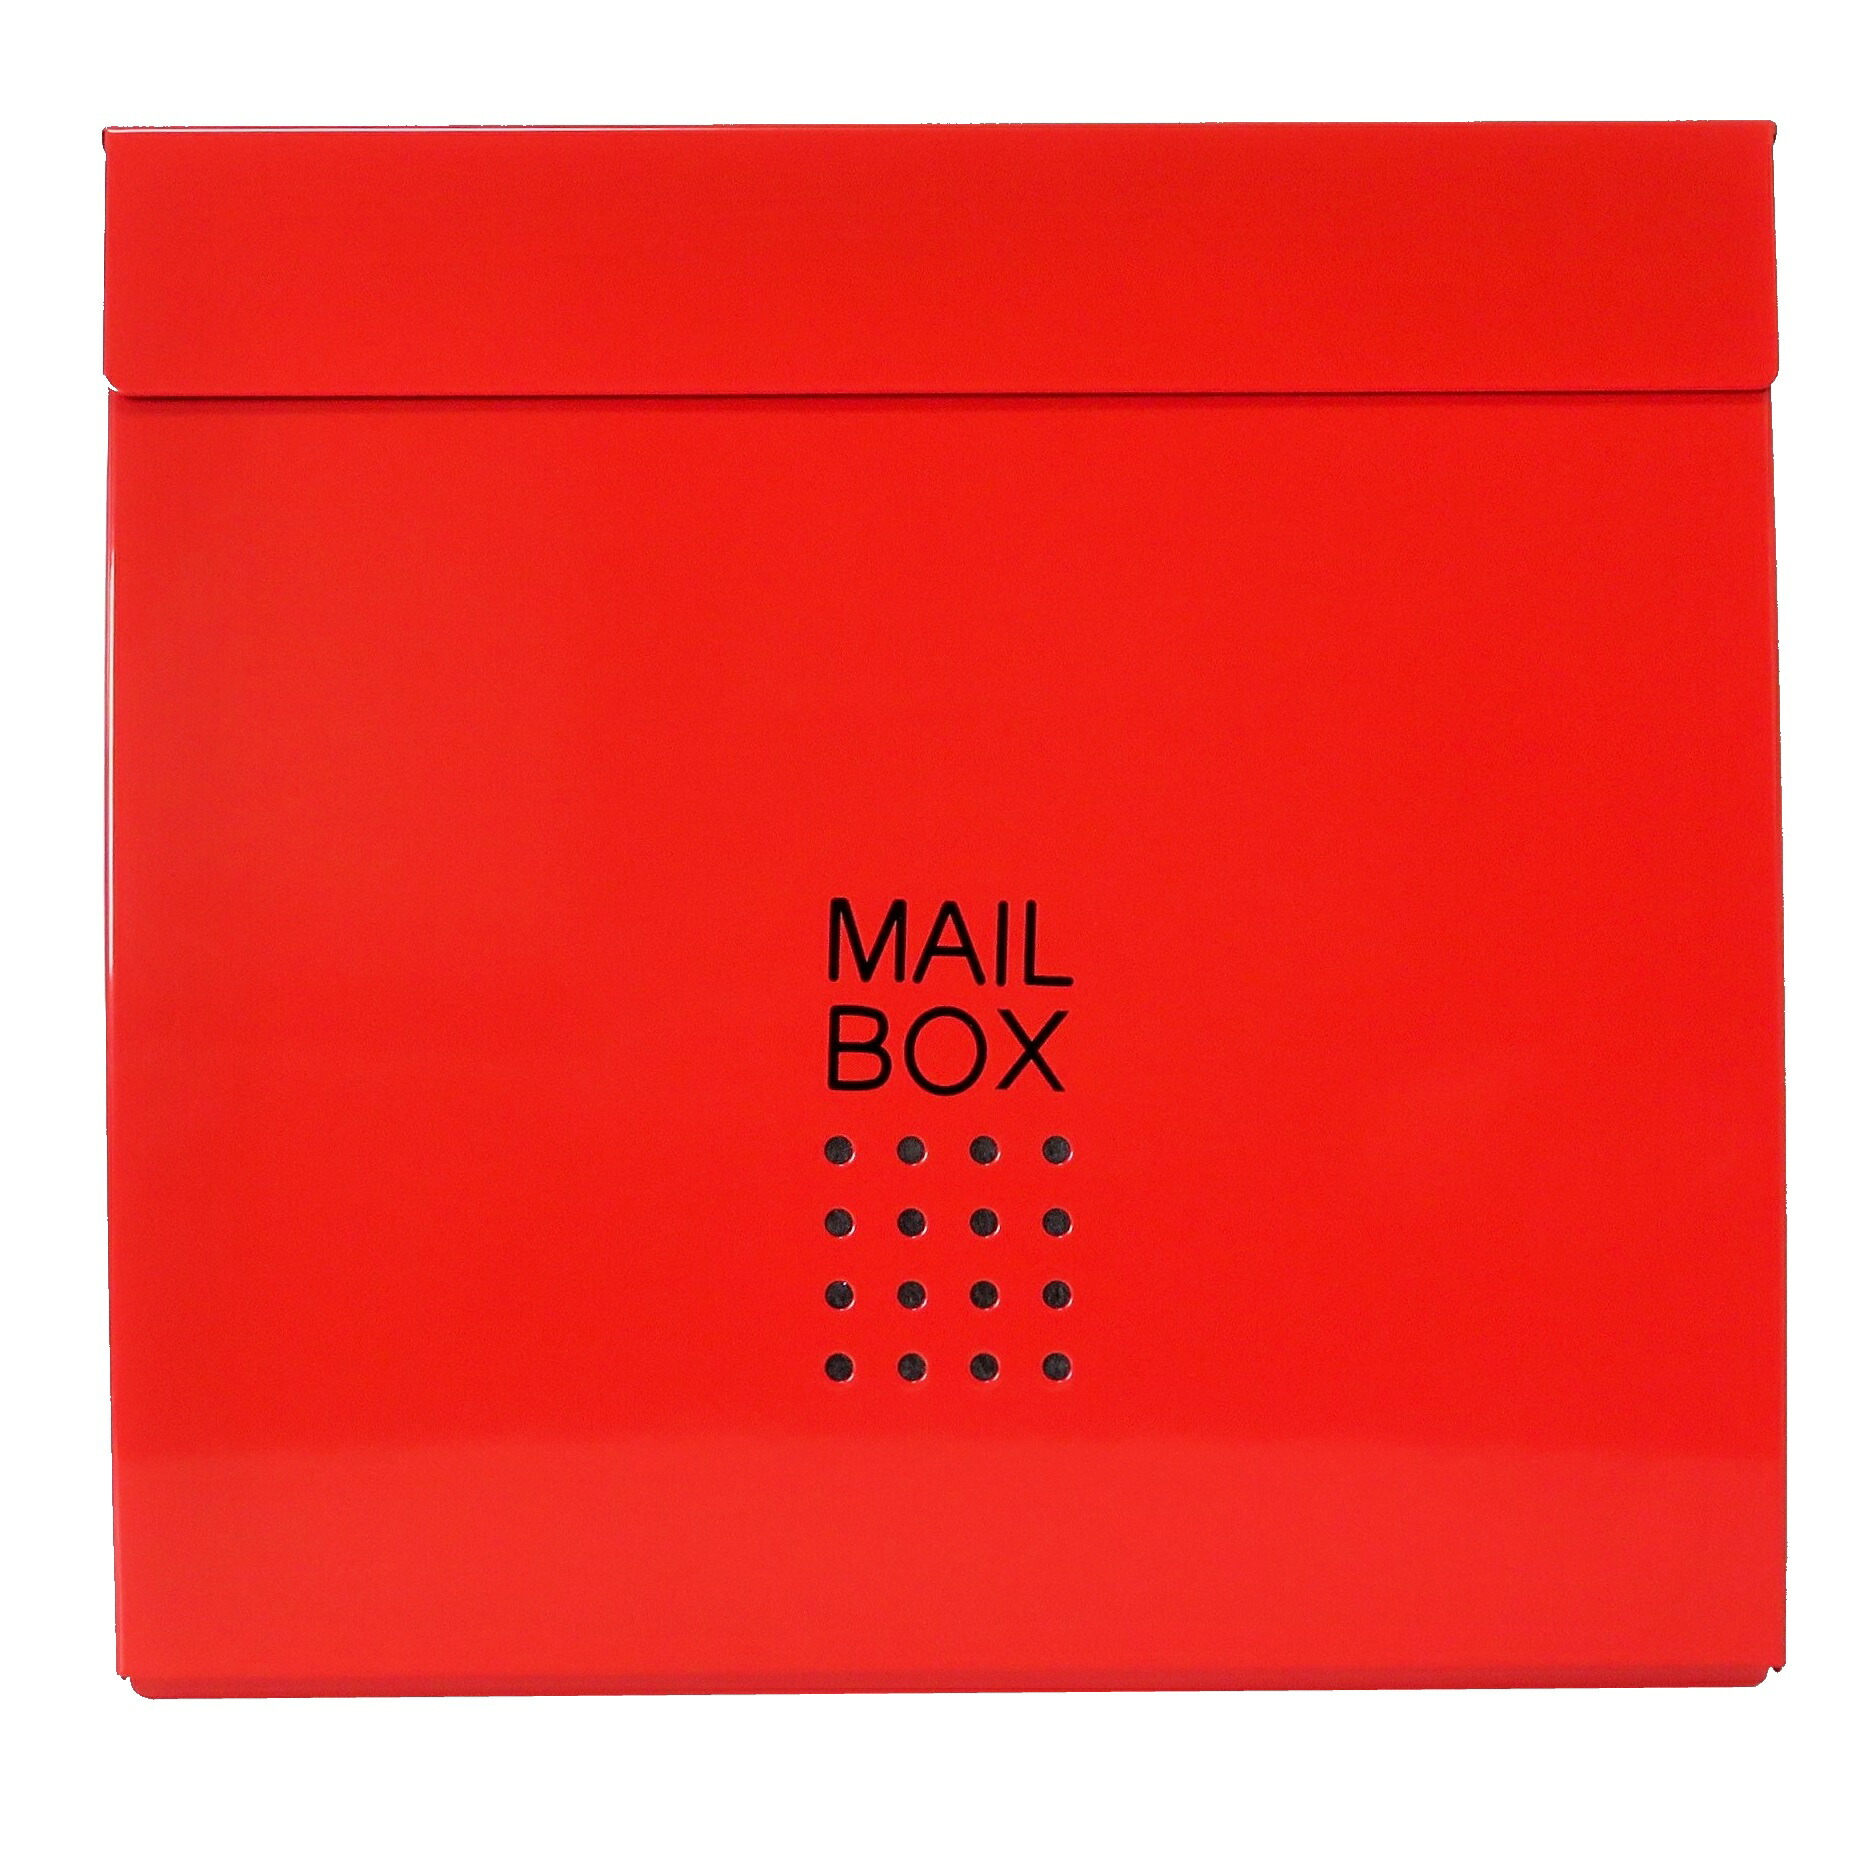 郵便ポスト スタンド 【あす楽】【郵便 ポスト】壁掛け 鍵付き おしゃれ 人気 郵便受け メールボックス つやあり赤色ポストpm173-1